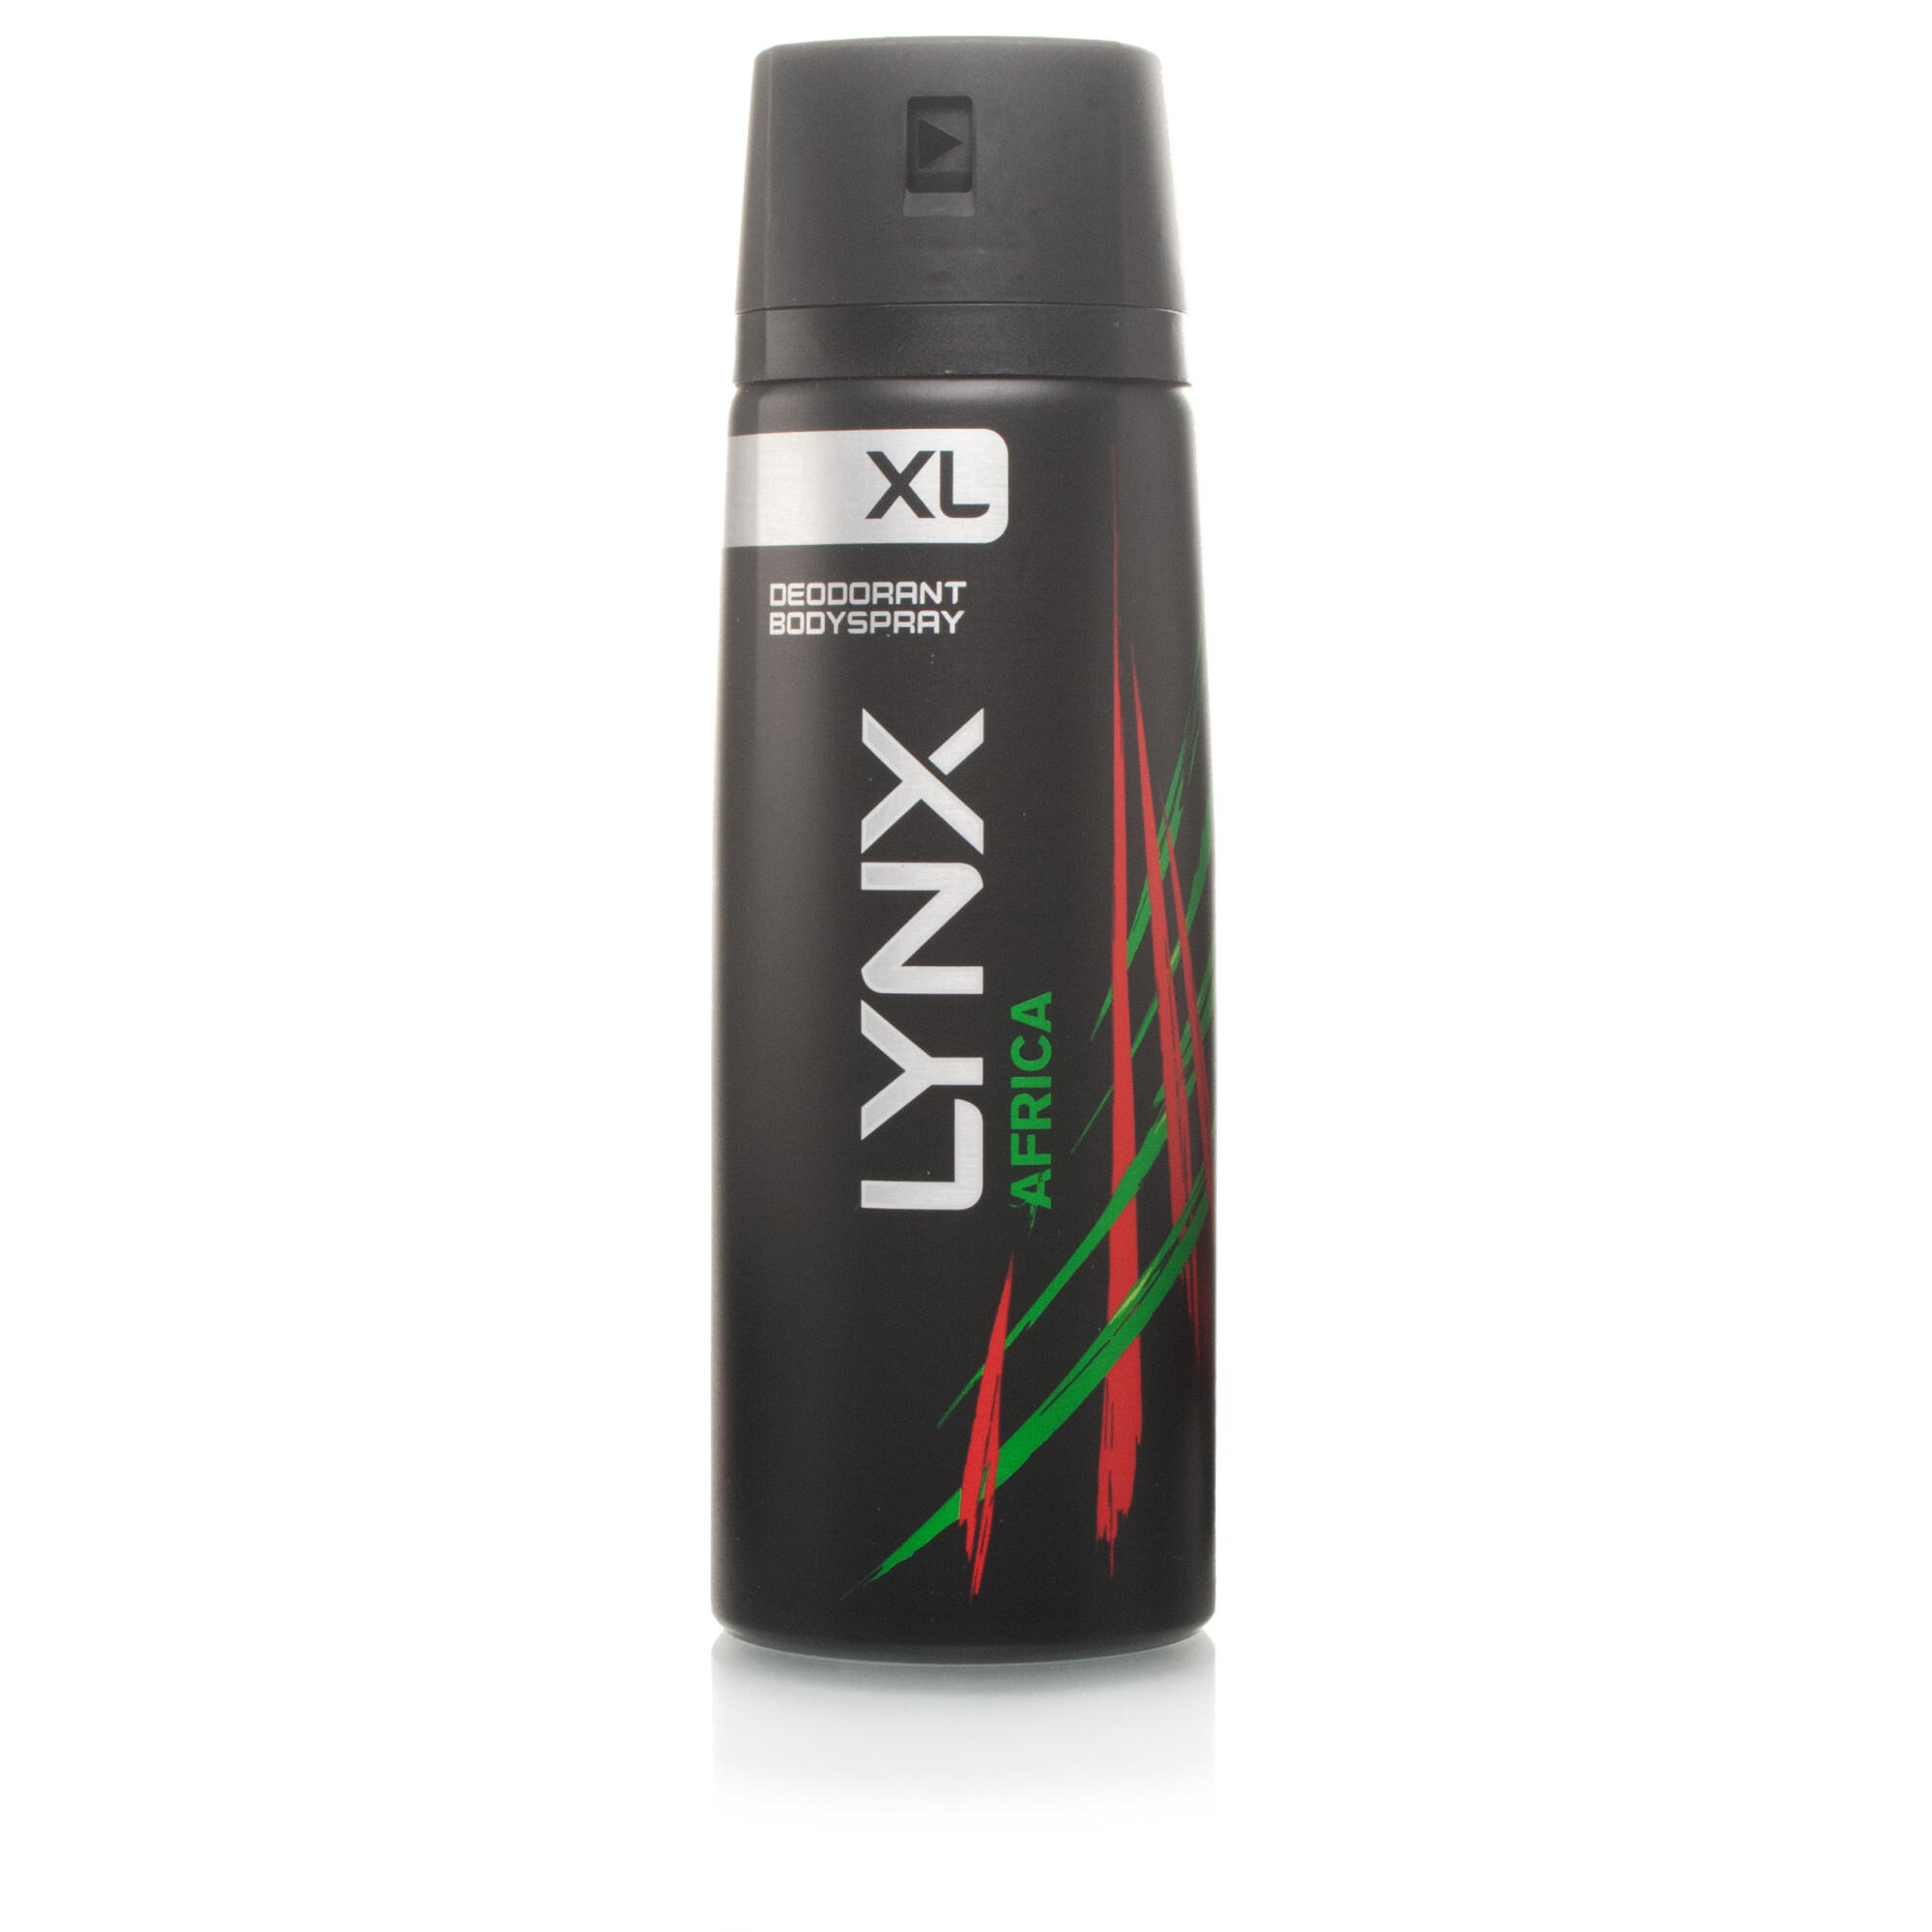 Lynx Africa XL Deodorant Bodyspray | Chemist Direct